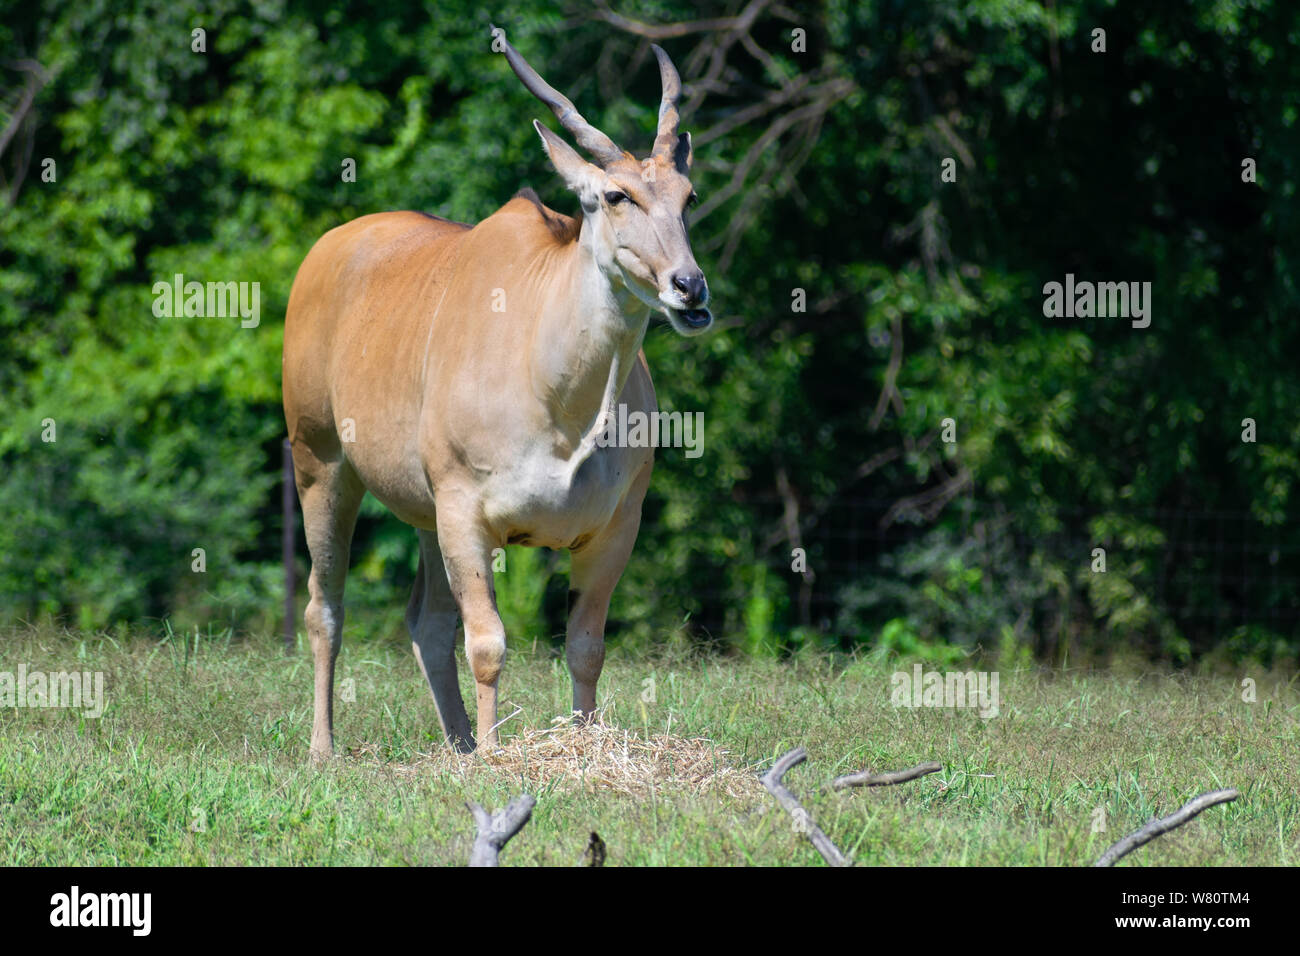 L'eland, commune dans les champs, la mastication. Banque D'Images